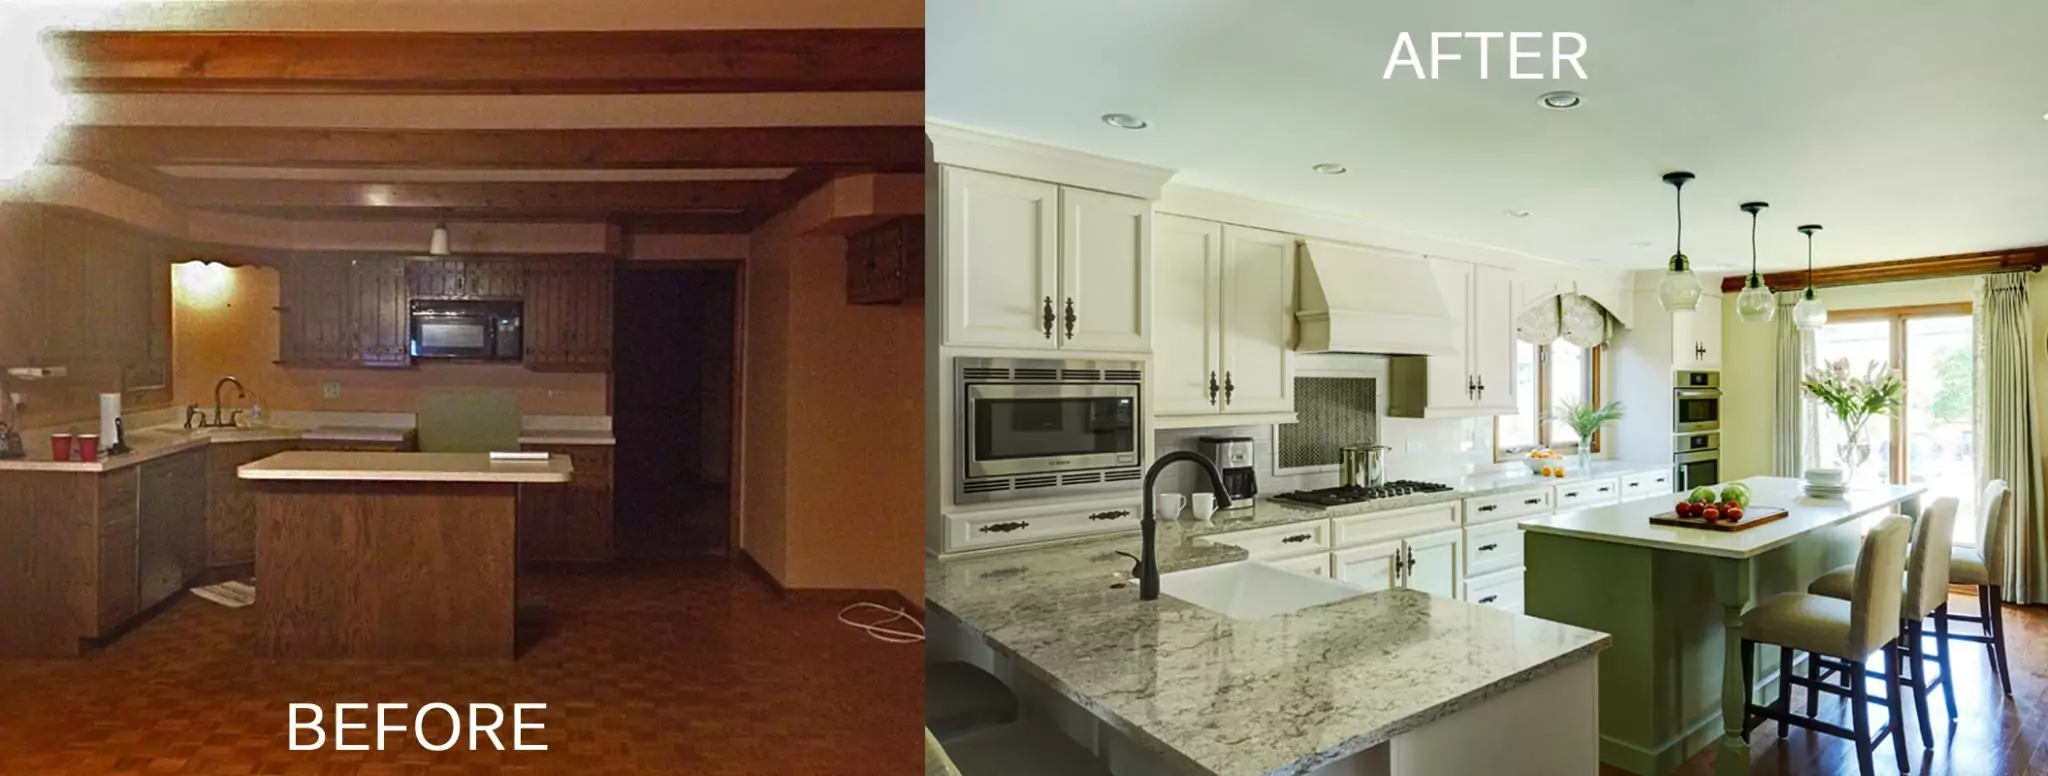 Goggin-Kitchen-Before-After.jpg